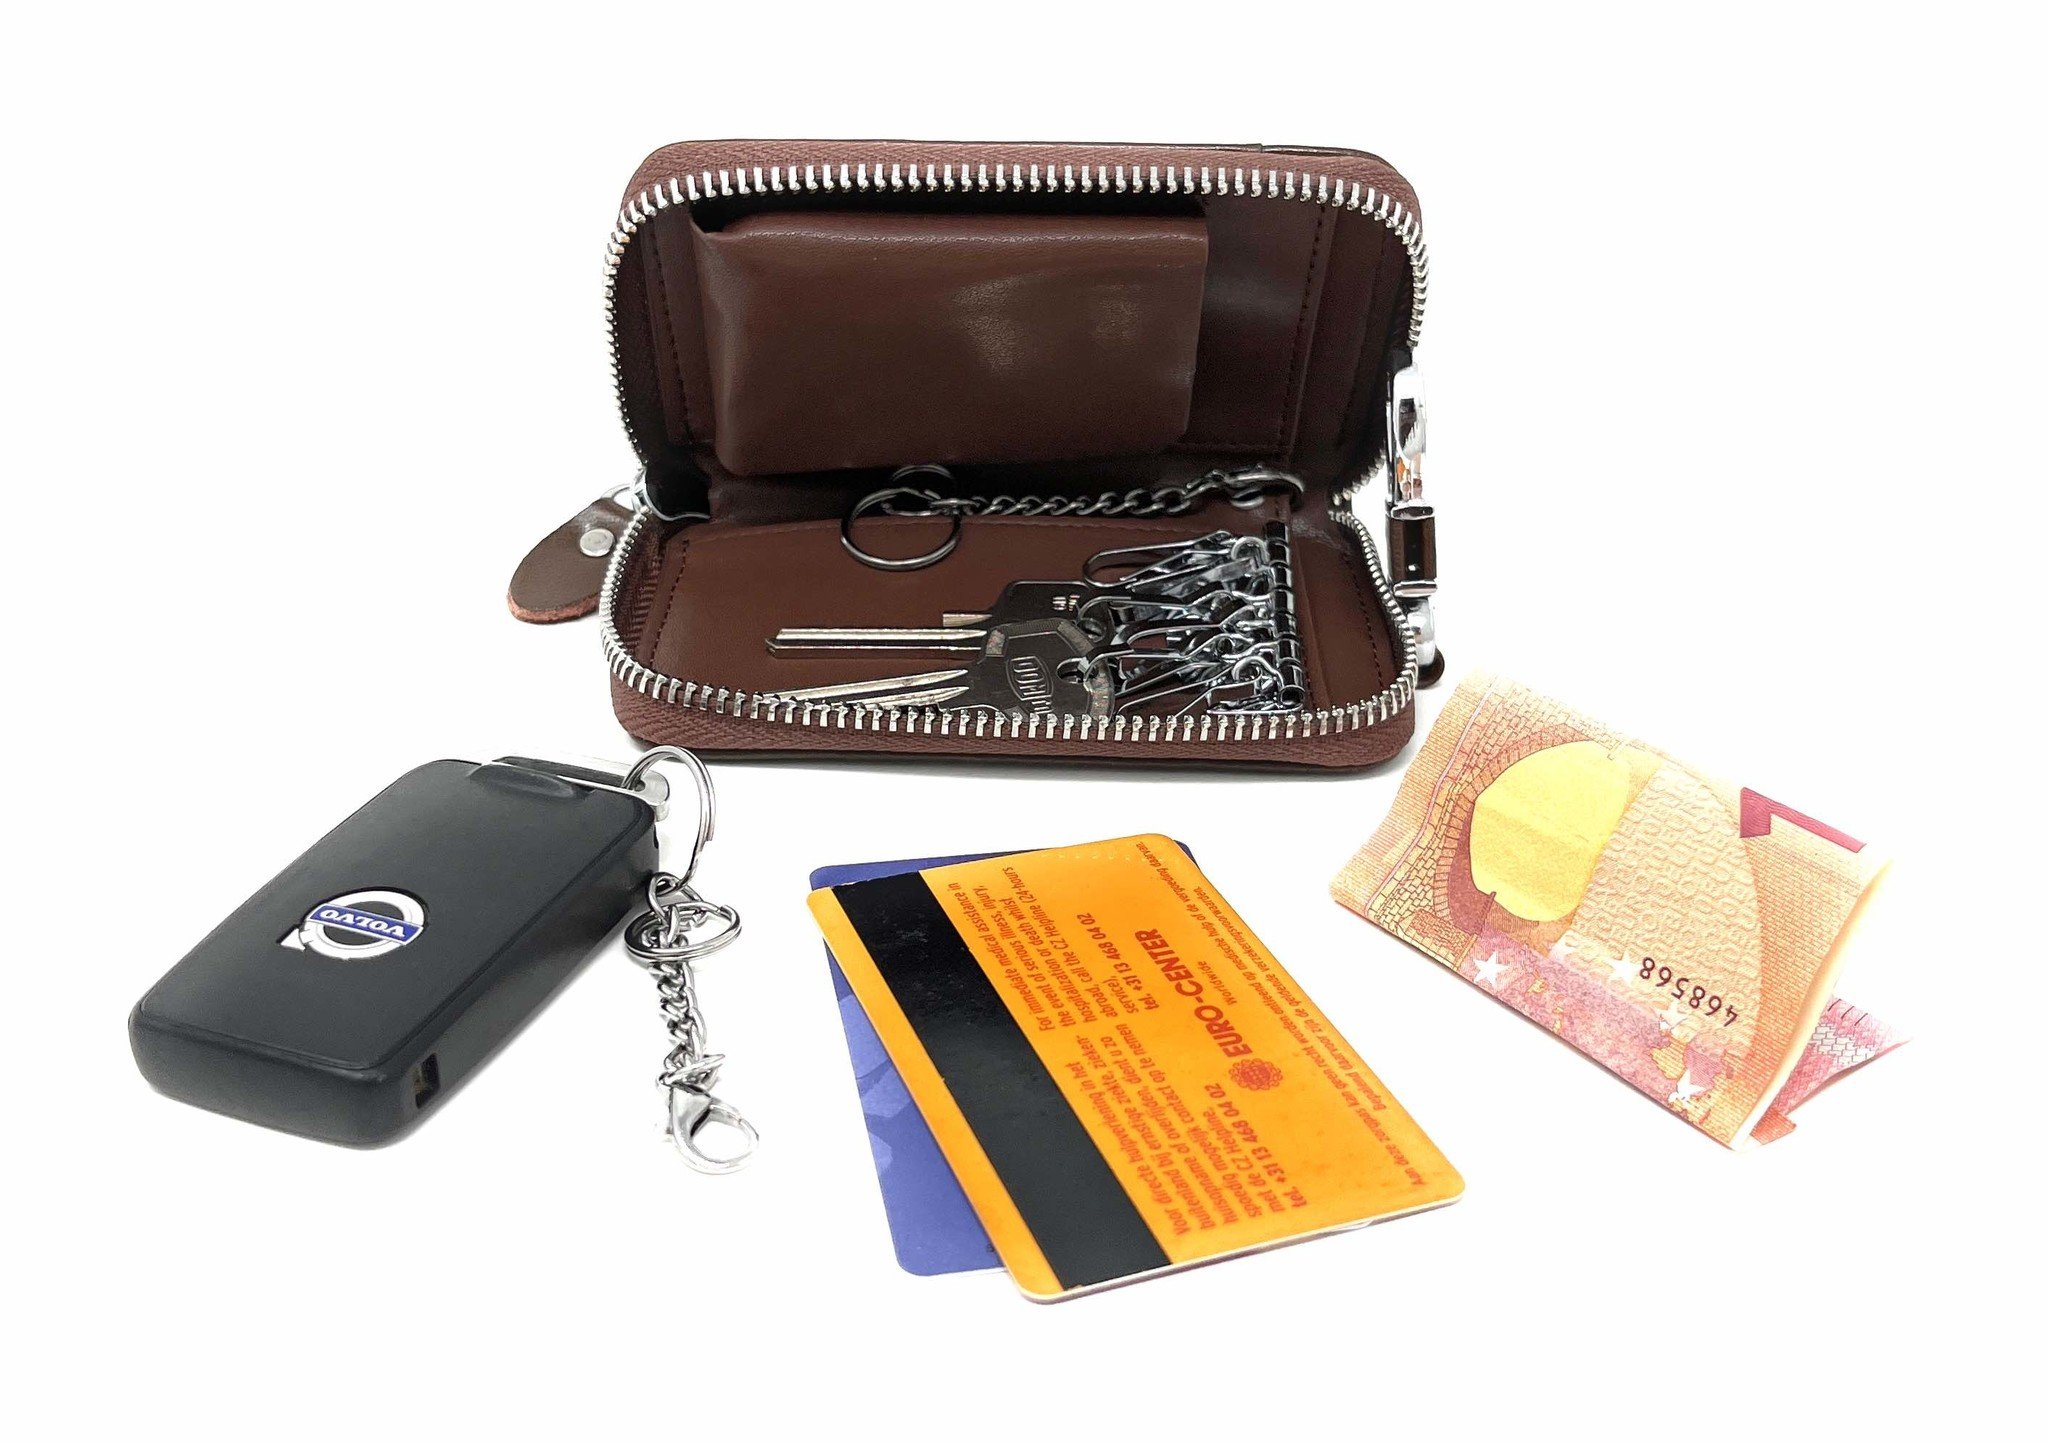 Leder-Schlüsseletui, 6 Schlüsselhaken, Kartenhalter, Geldschein-Brieftasche, Autoschlüsseltasche, Multifunktions-Schlüssel-Organizer - Braun-5